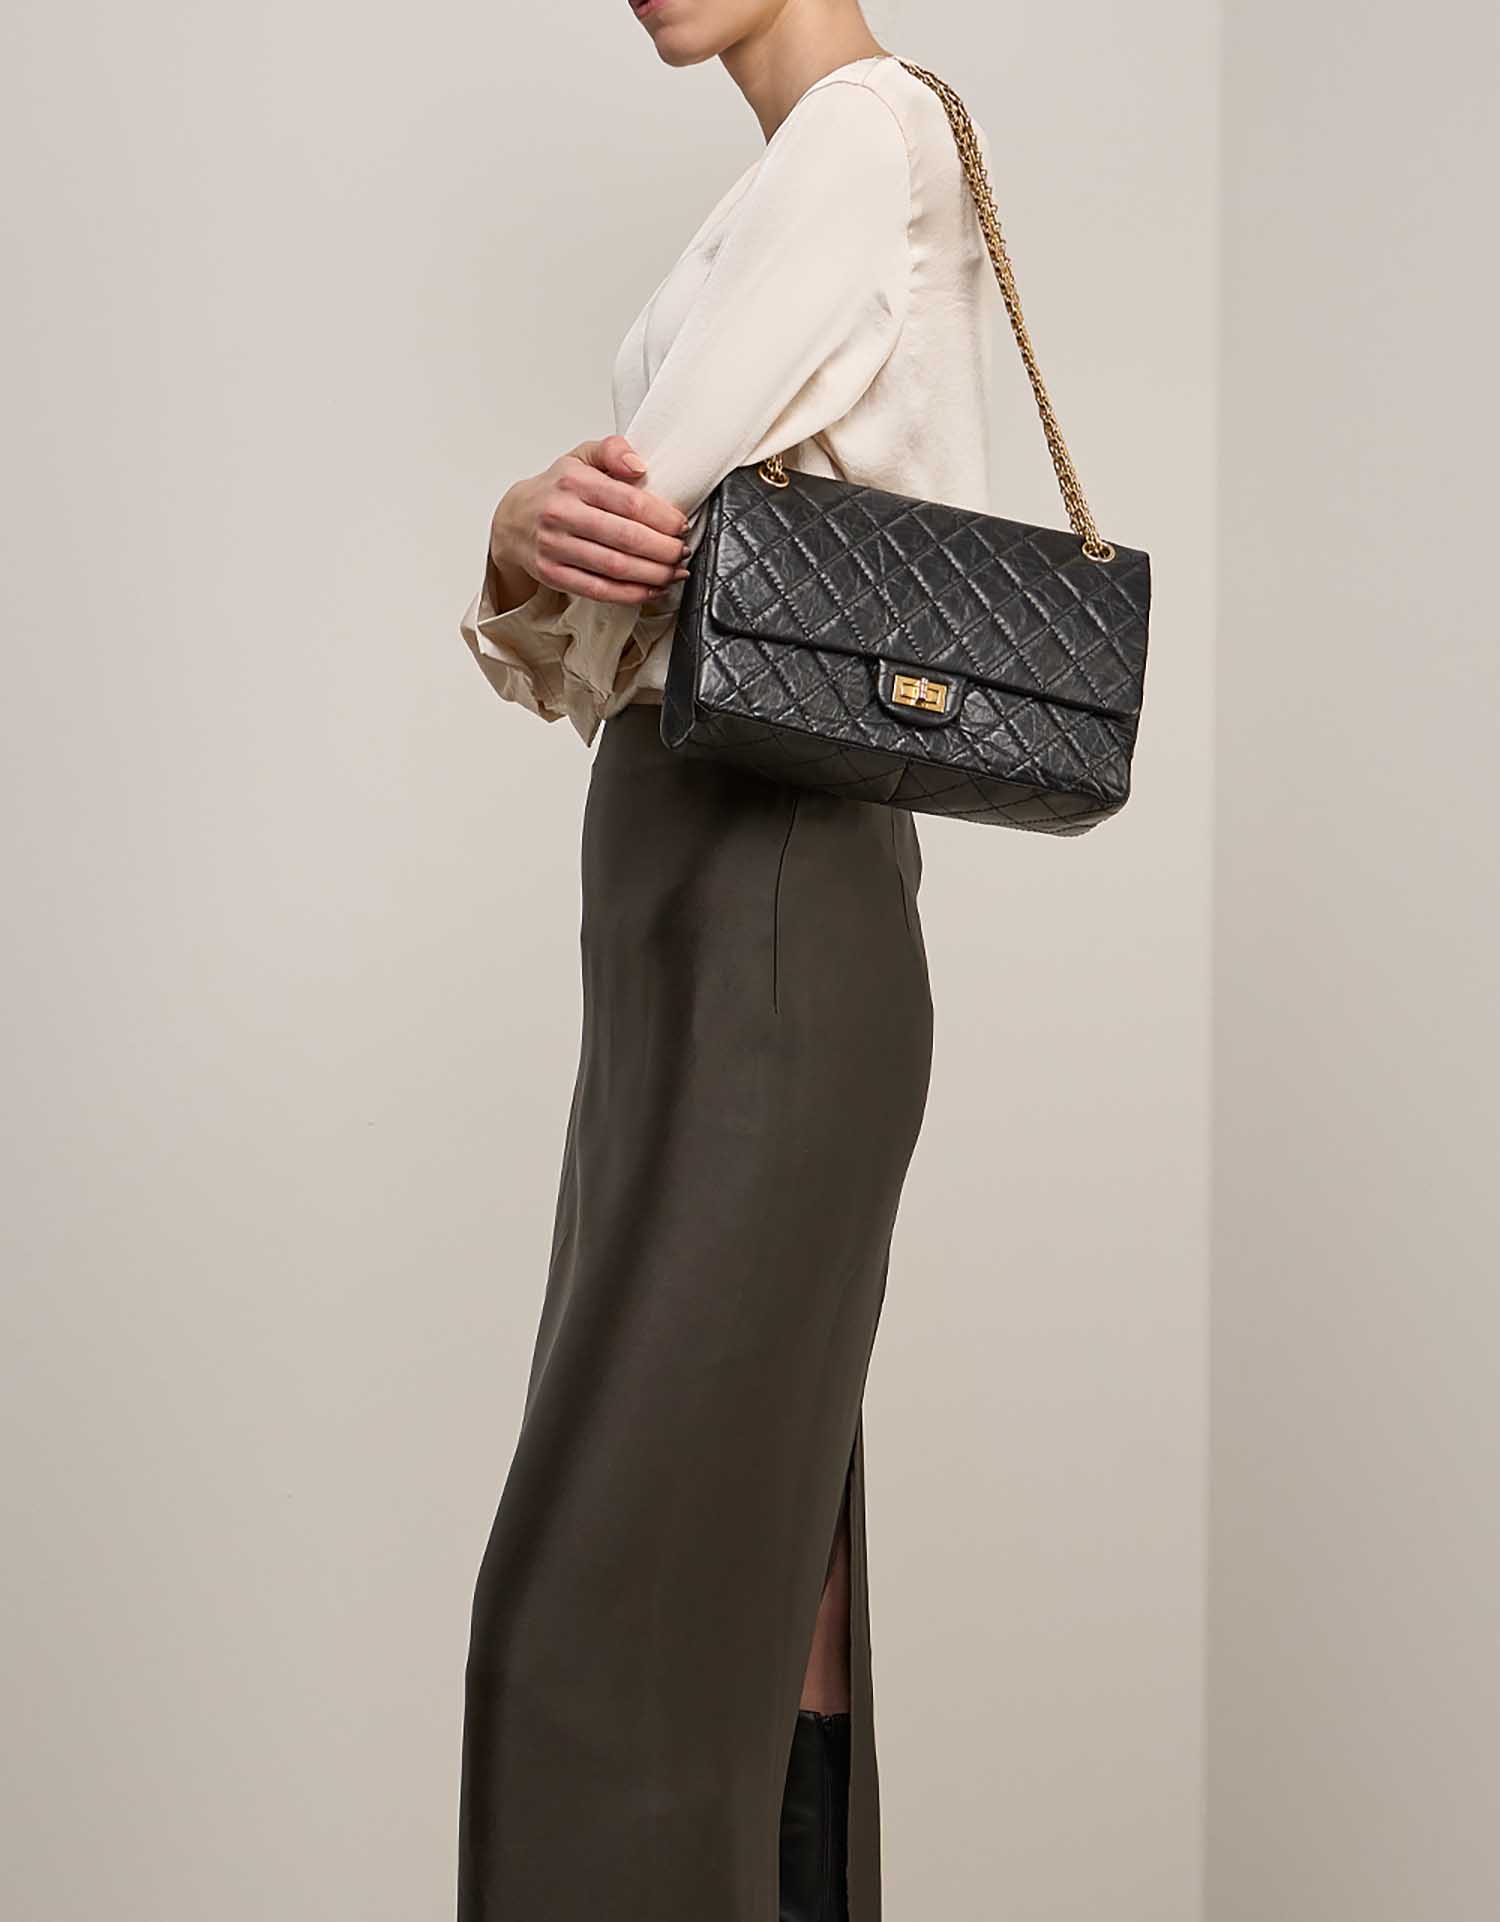 Chanel 255 226 Schwarz auf Model | Verkaufen Sie Ihre Designer-Tasche auf Saclab.com